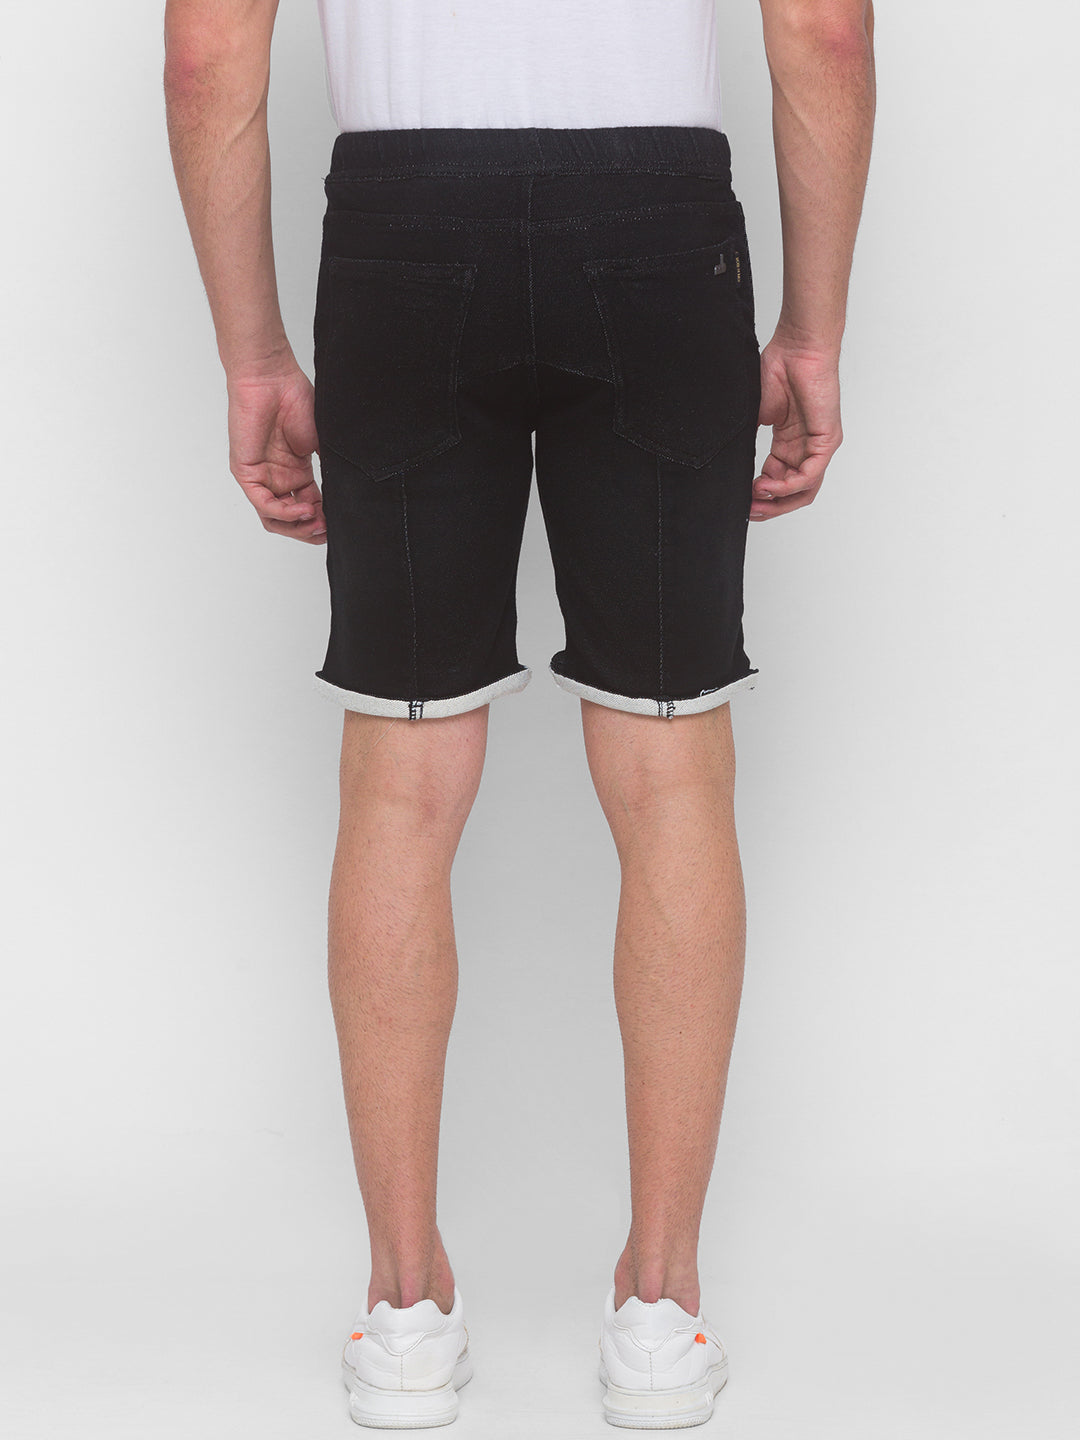 Raw Black Denim Shorts